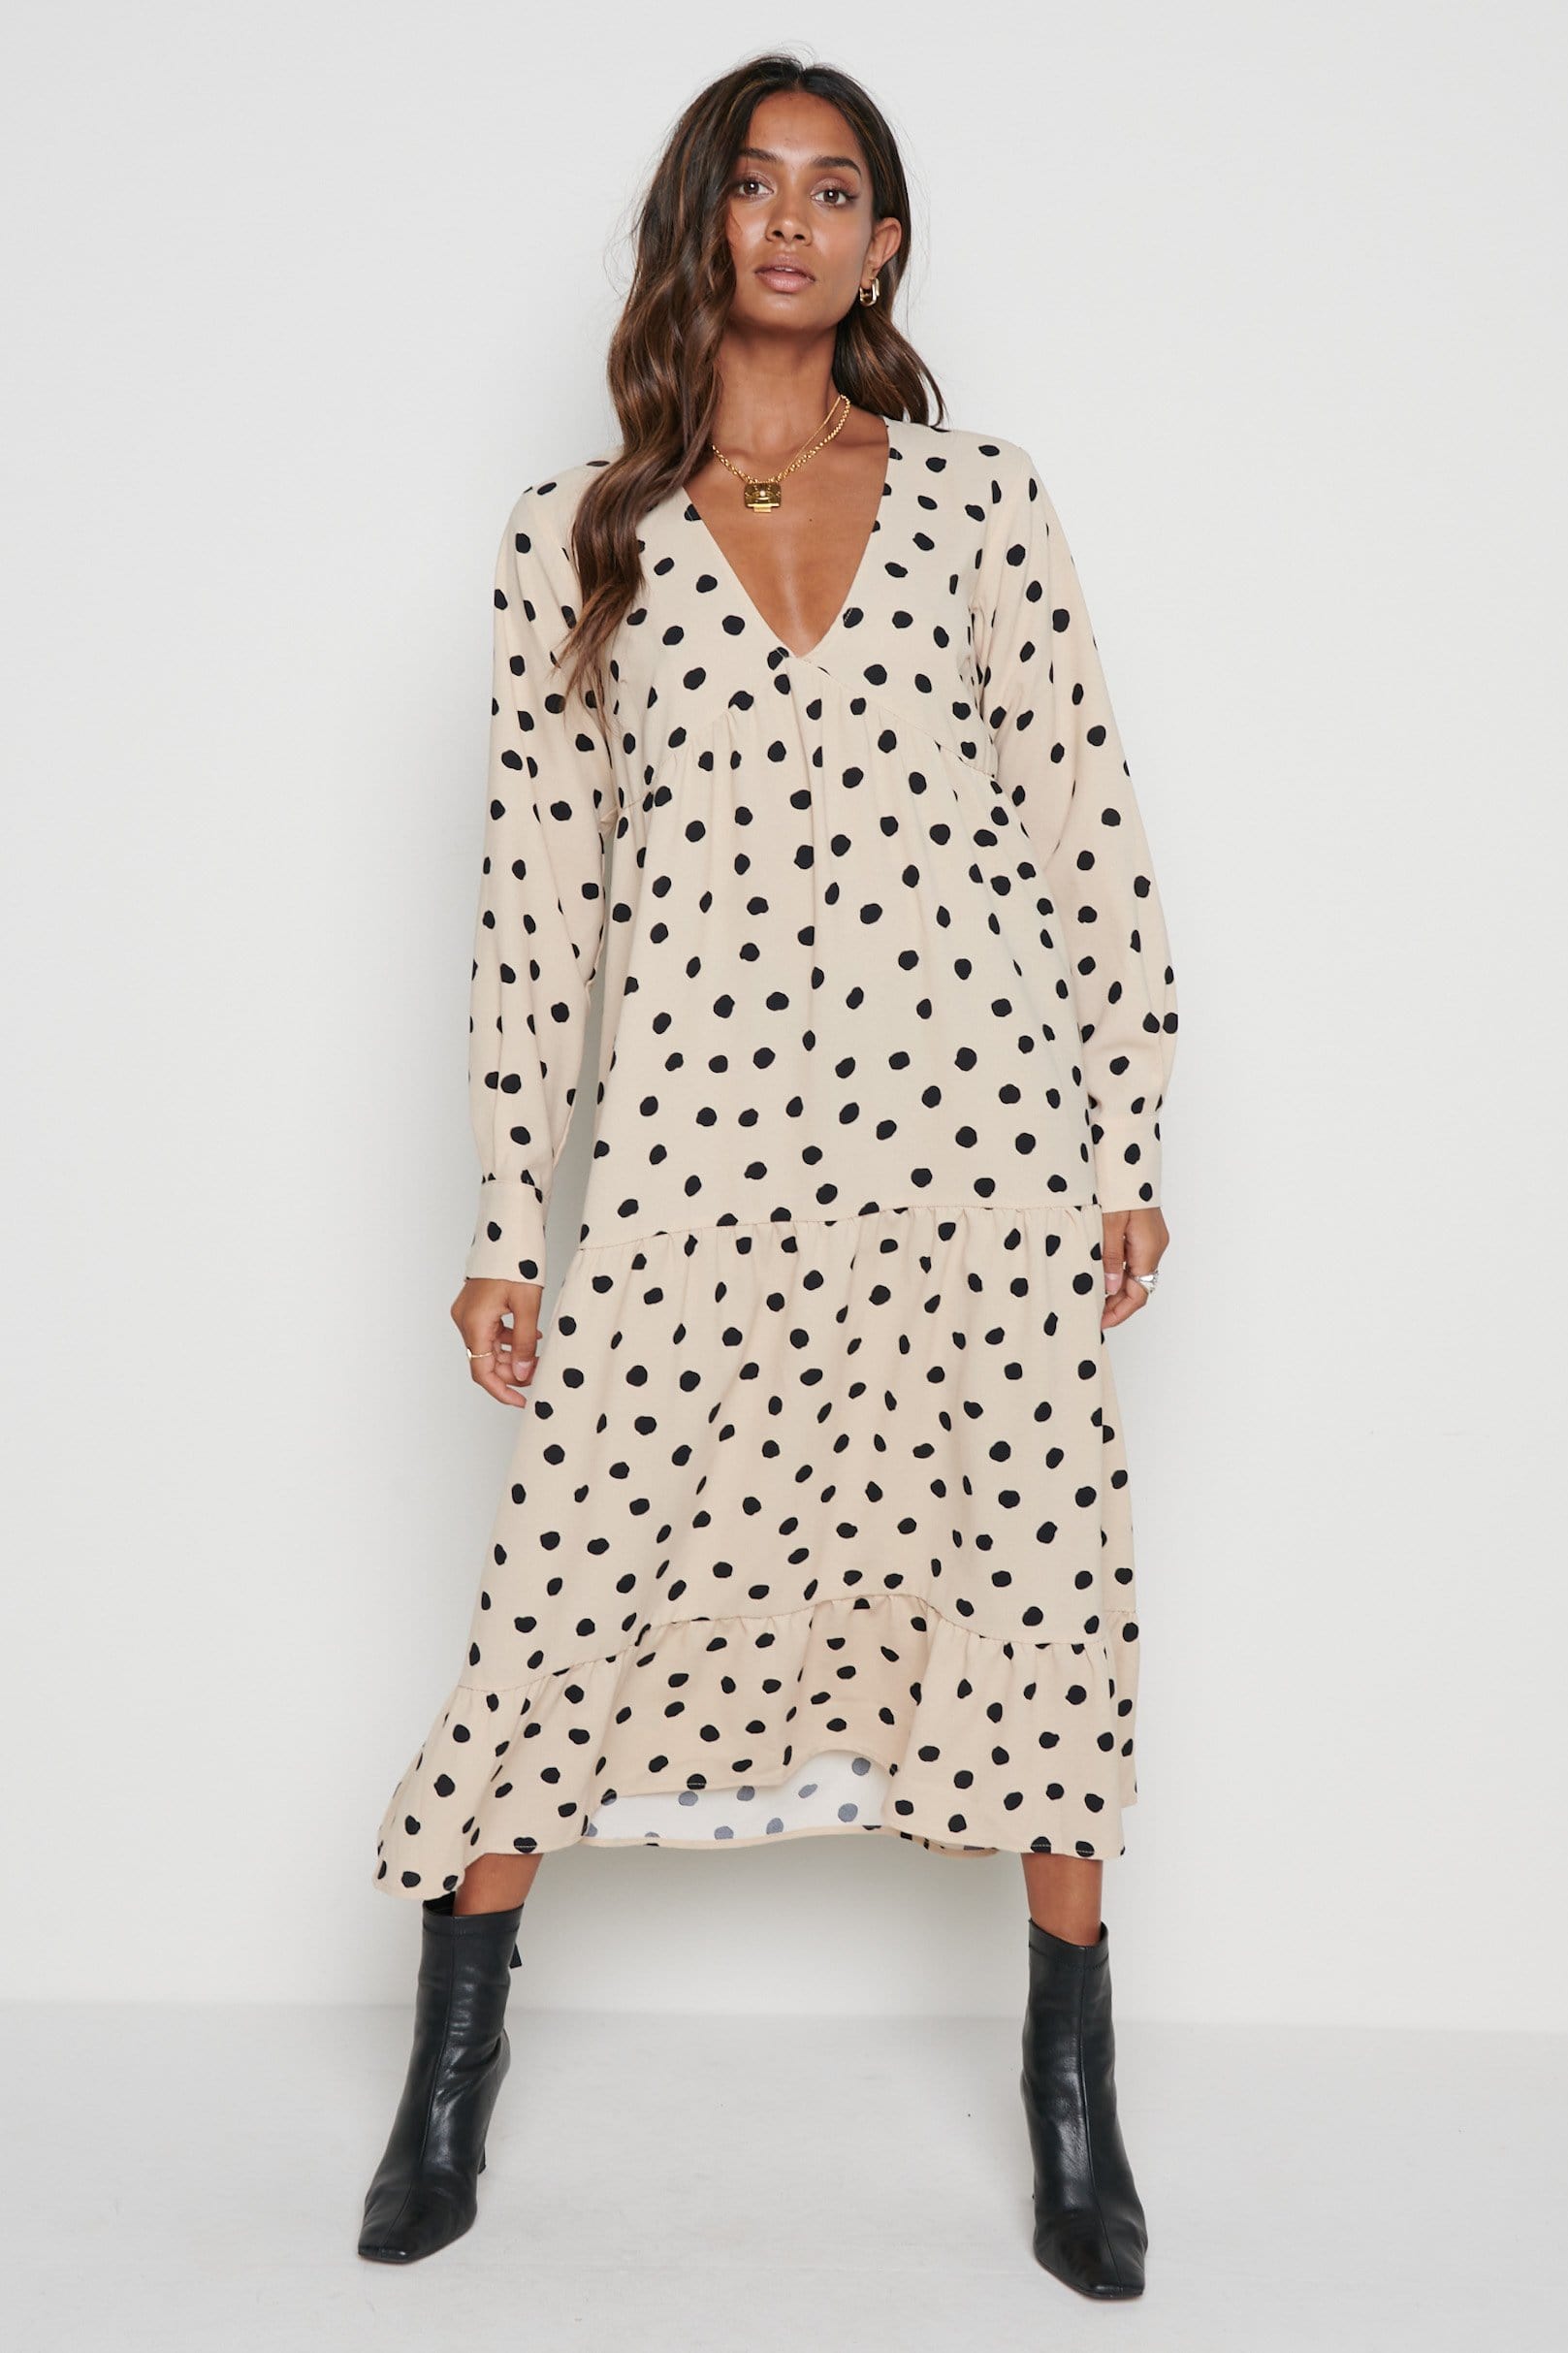 Miss Lavish London Women's Plus Size Dresses Polka Dot Printed